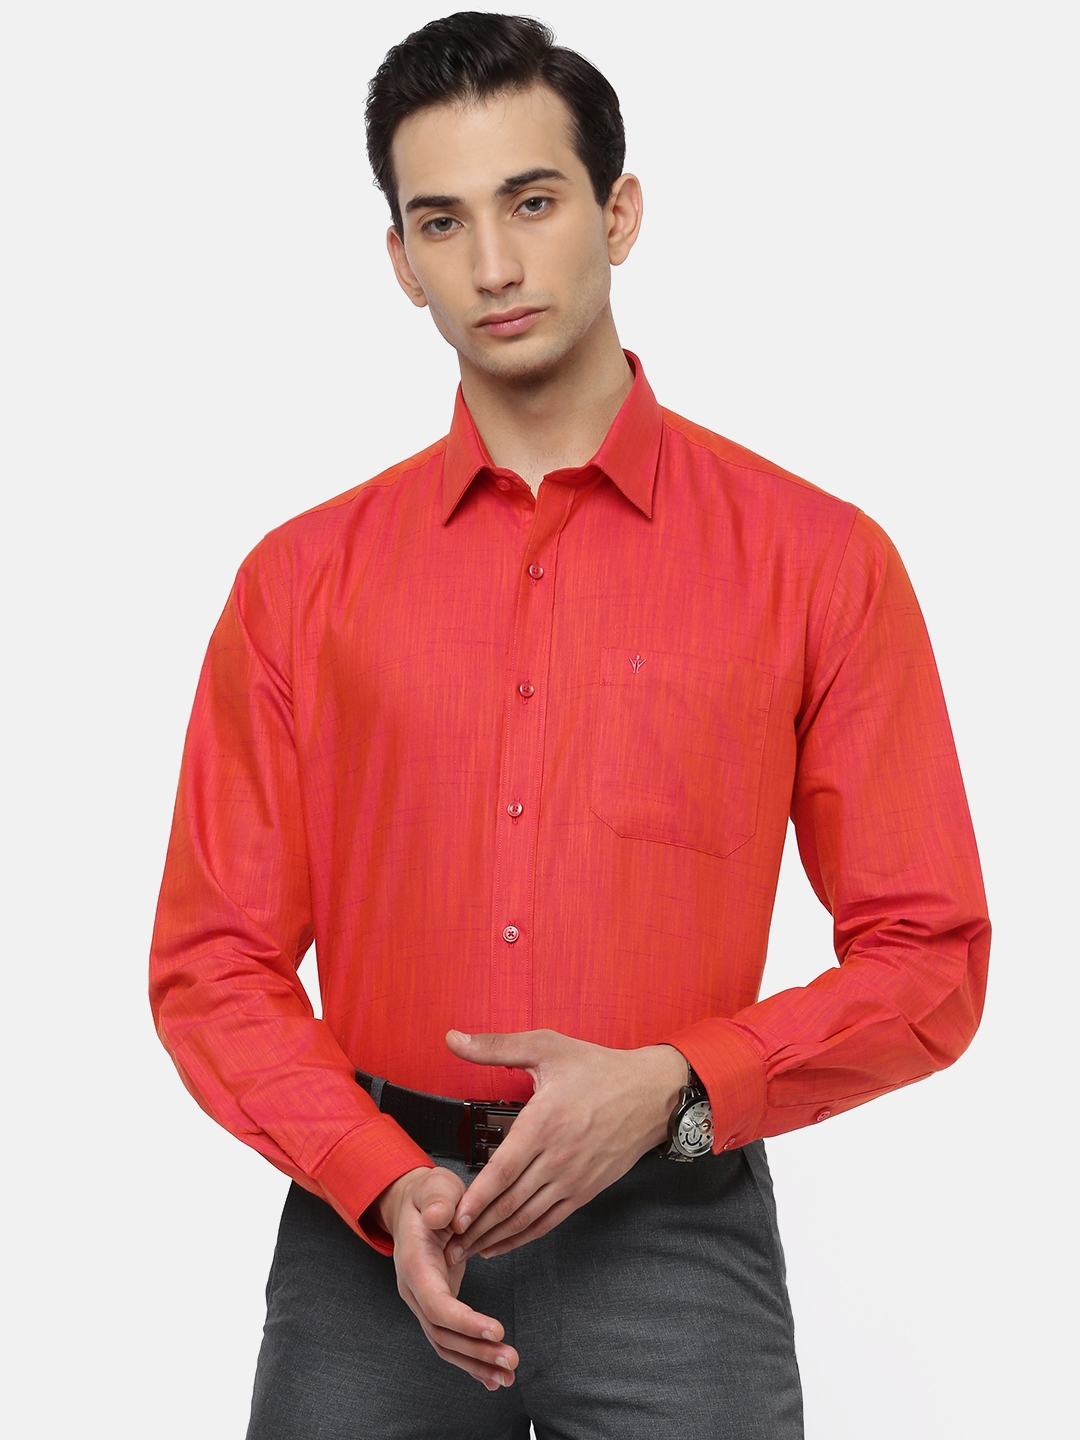 Ramraj Cotton | Red Solid Formal Shirts